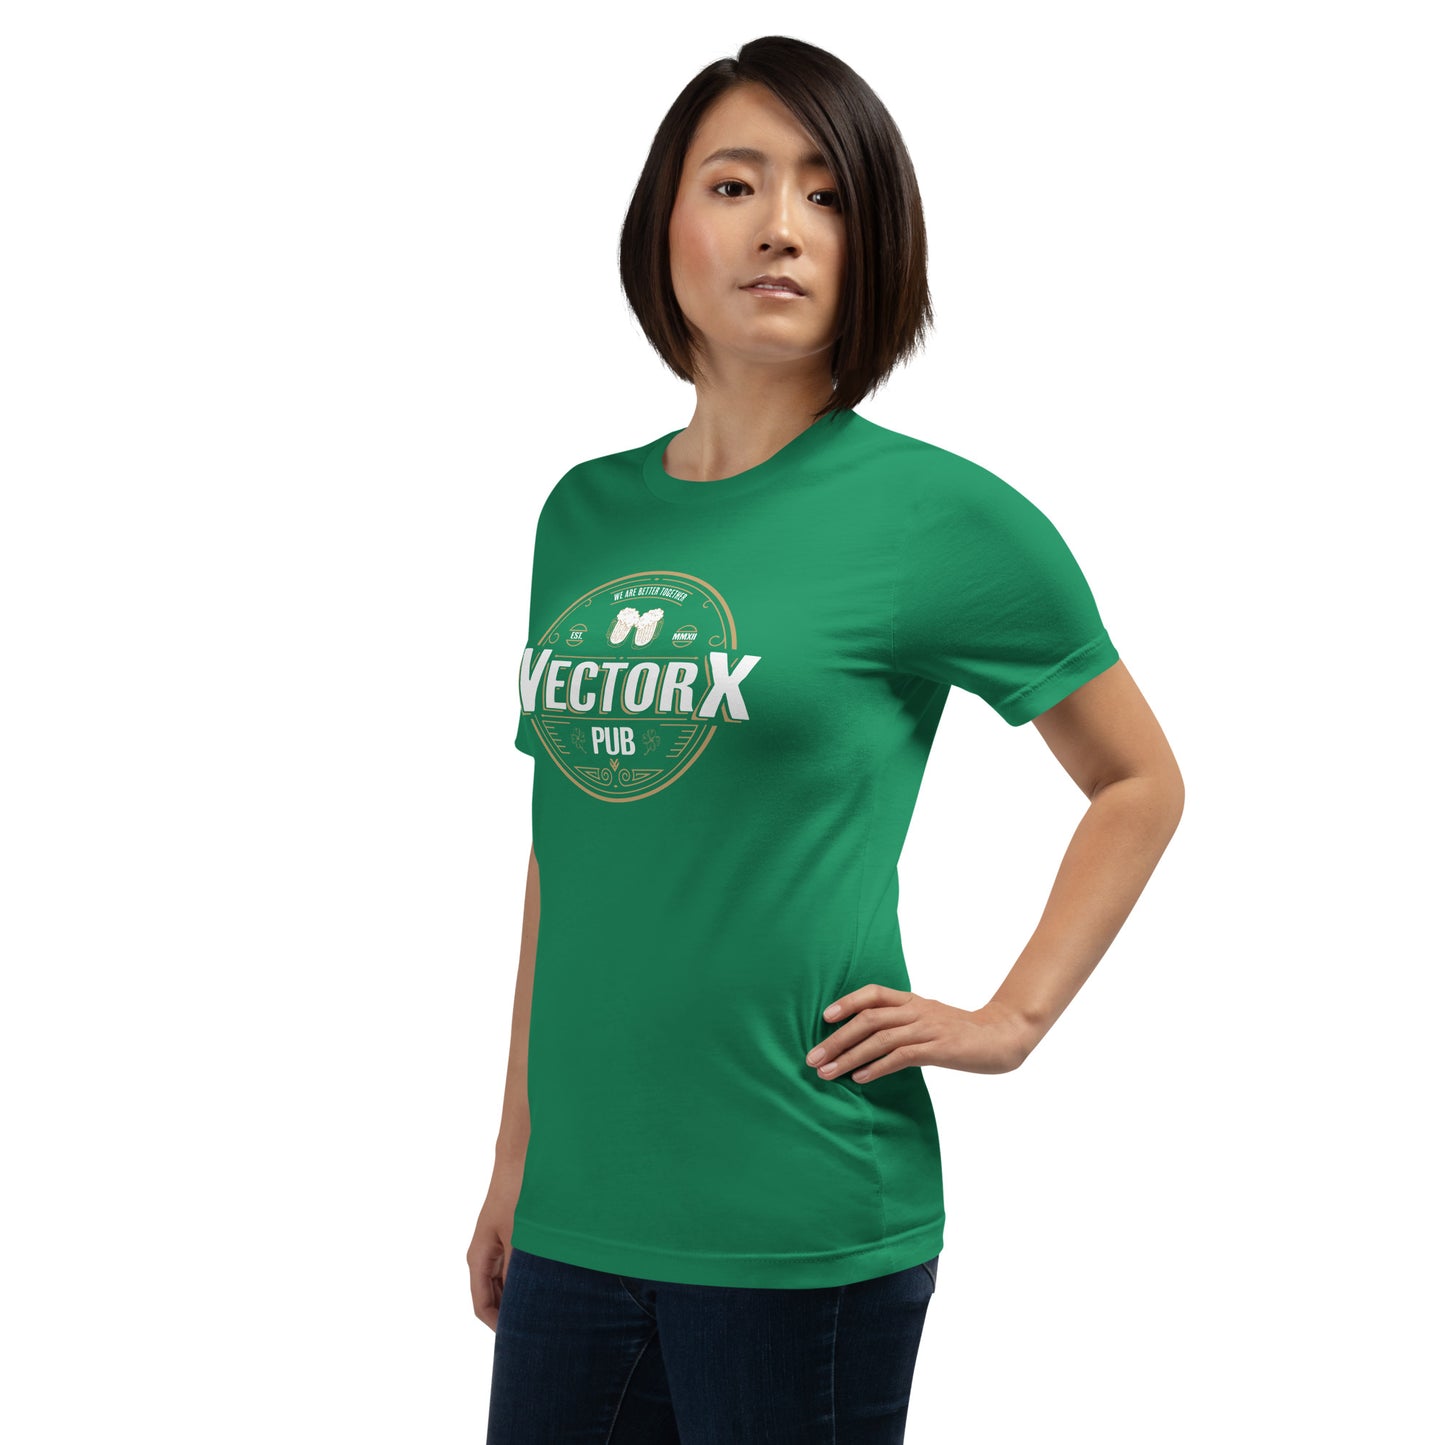 VectorX Pub T-Shirt